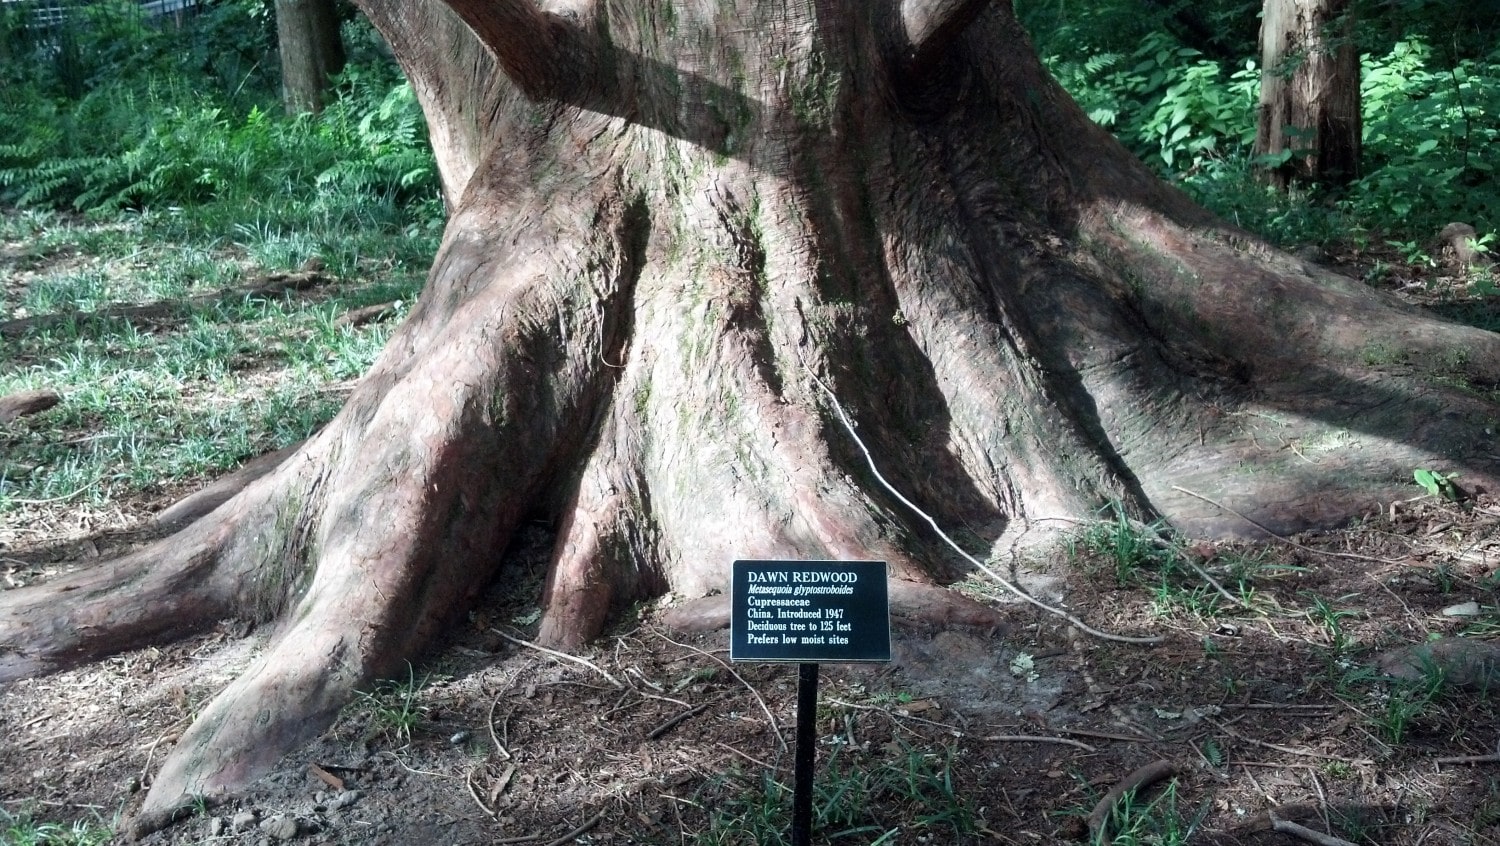 Alabama dawn redwood Davis Arboretum roots 2